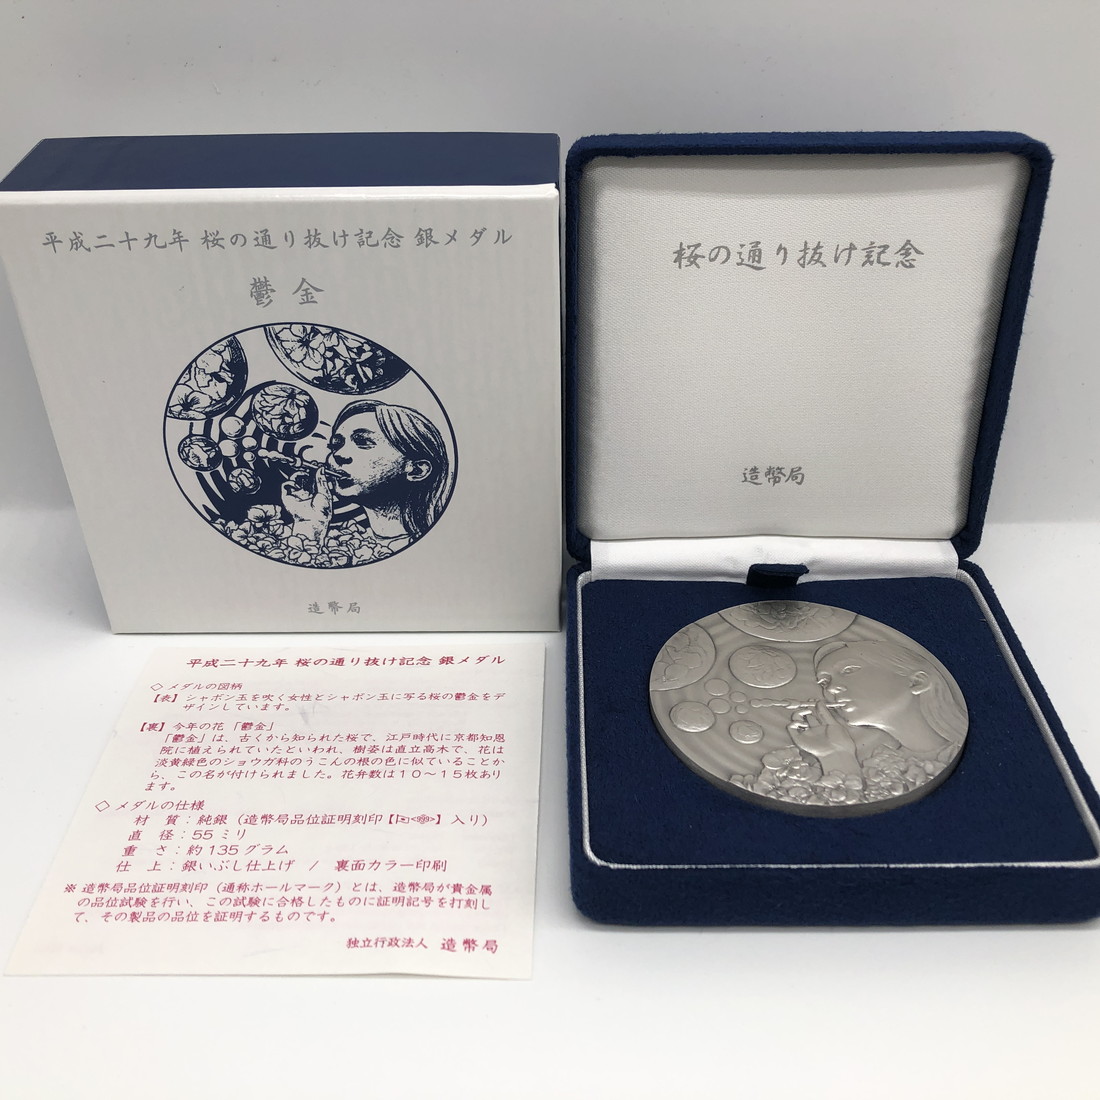 平成22年桜の通り抜け純銀メダル 旧貨幣 | discovermediaworks.com